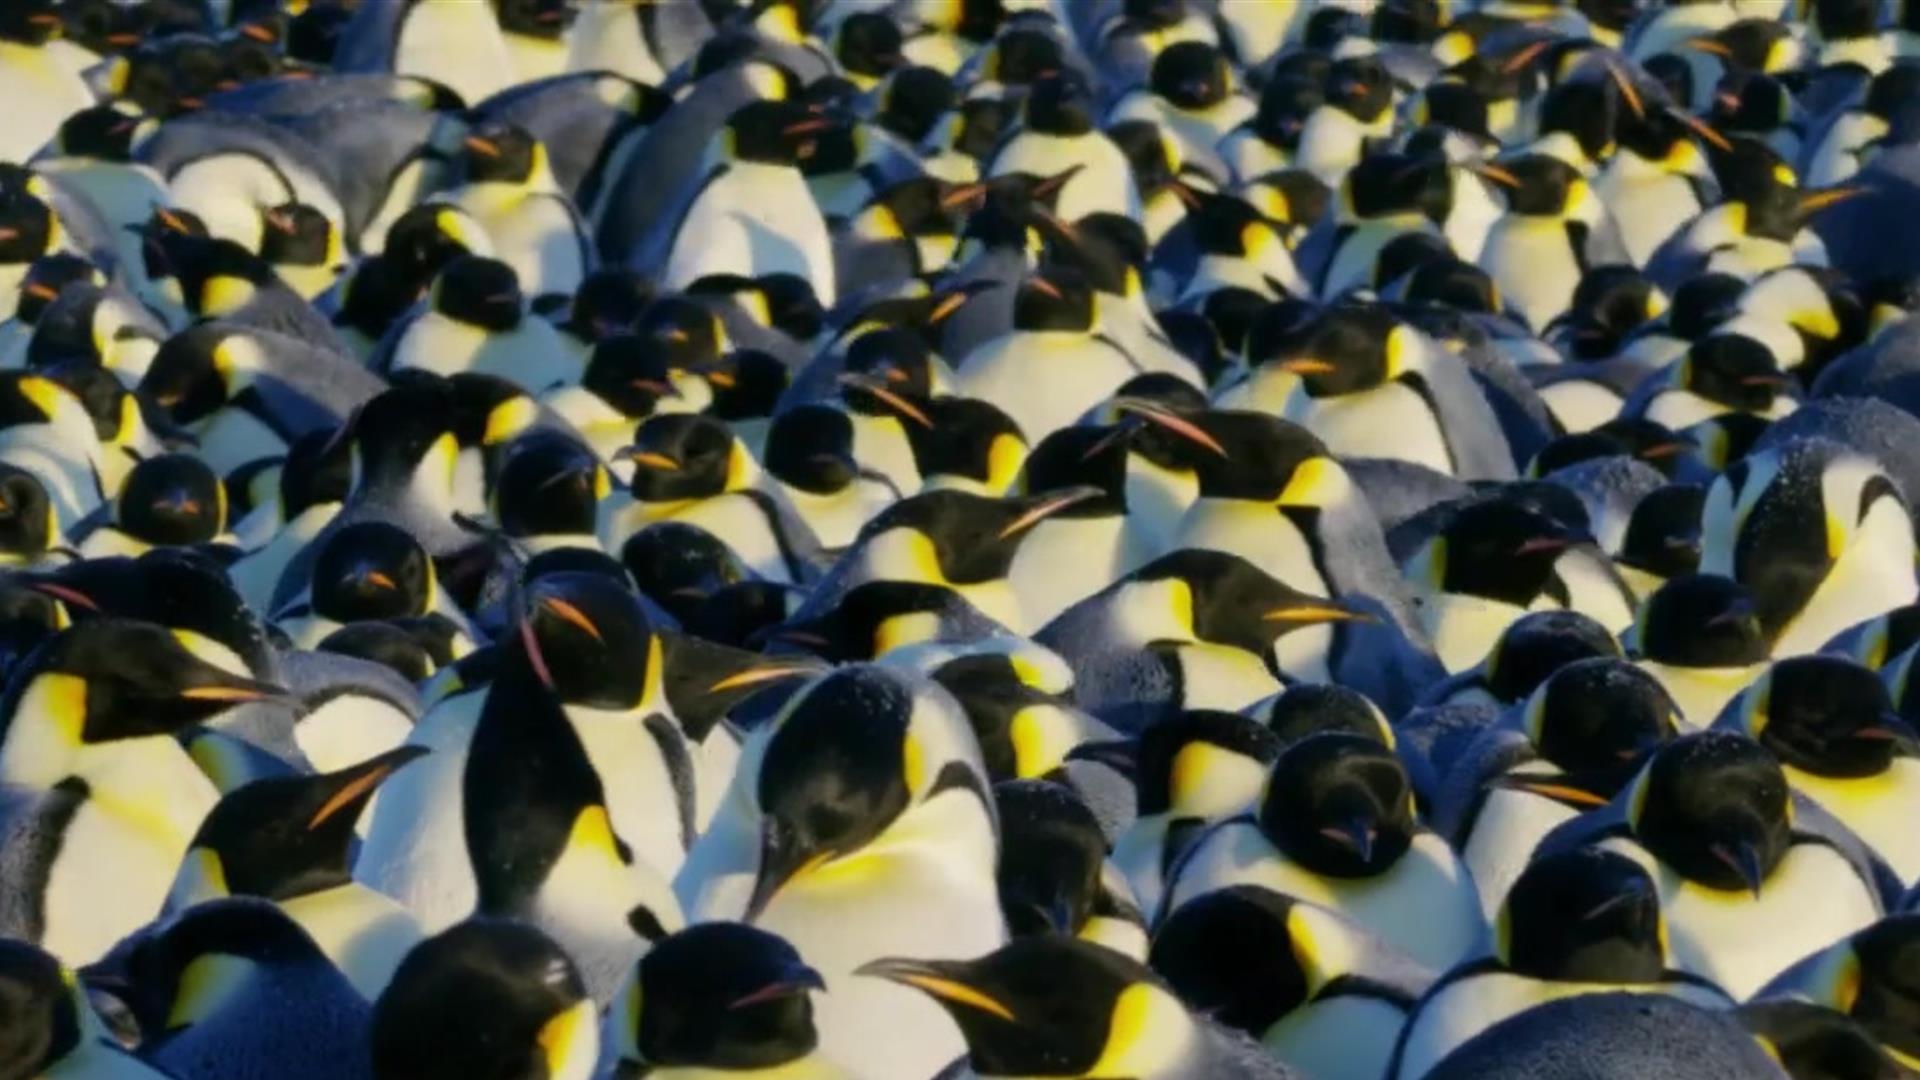 Crew Saves Emperor Penguins – Wonderstruck